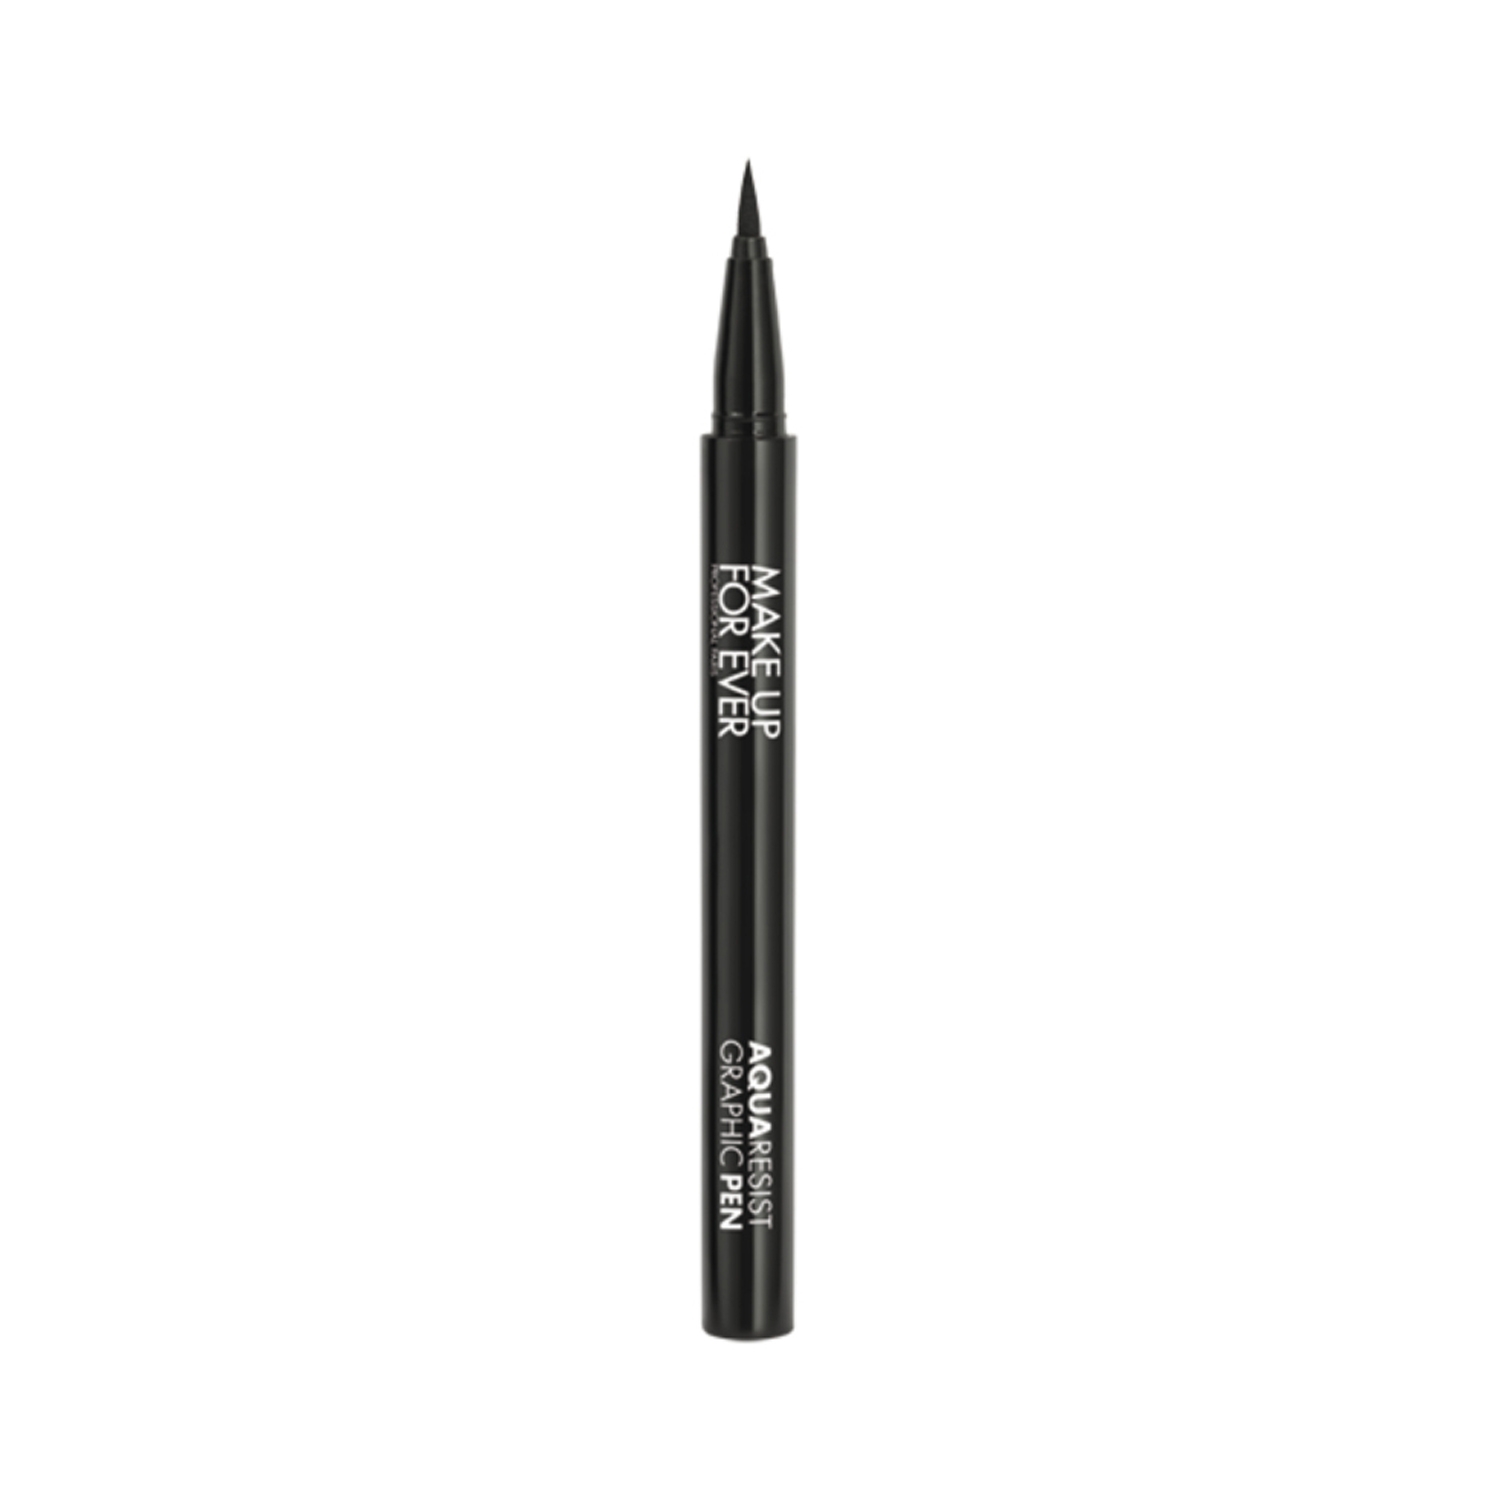 Make Up For Ever | Make Up For Ever Aqua Resist Graphic Pen Intense Eyeliner 1 (0.52ml)